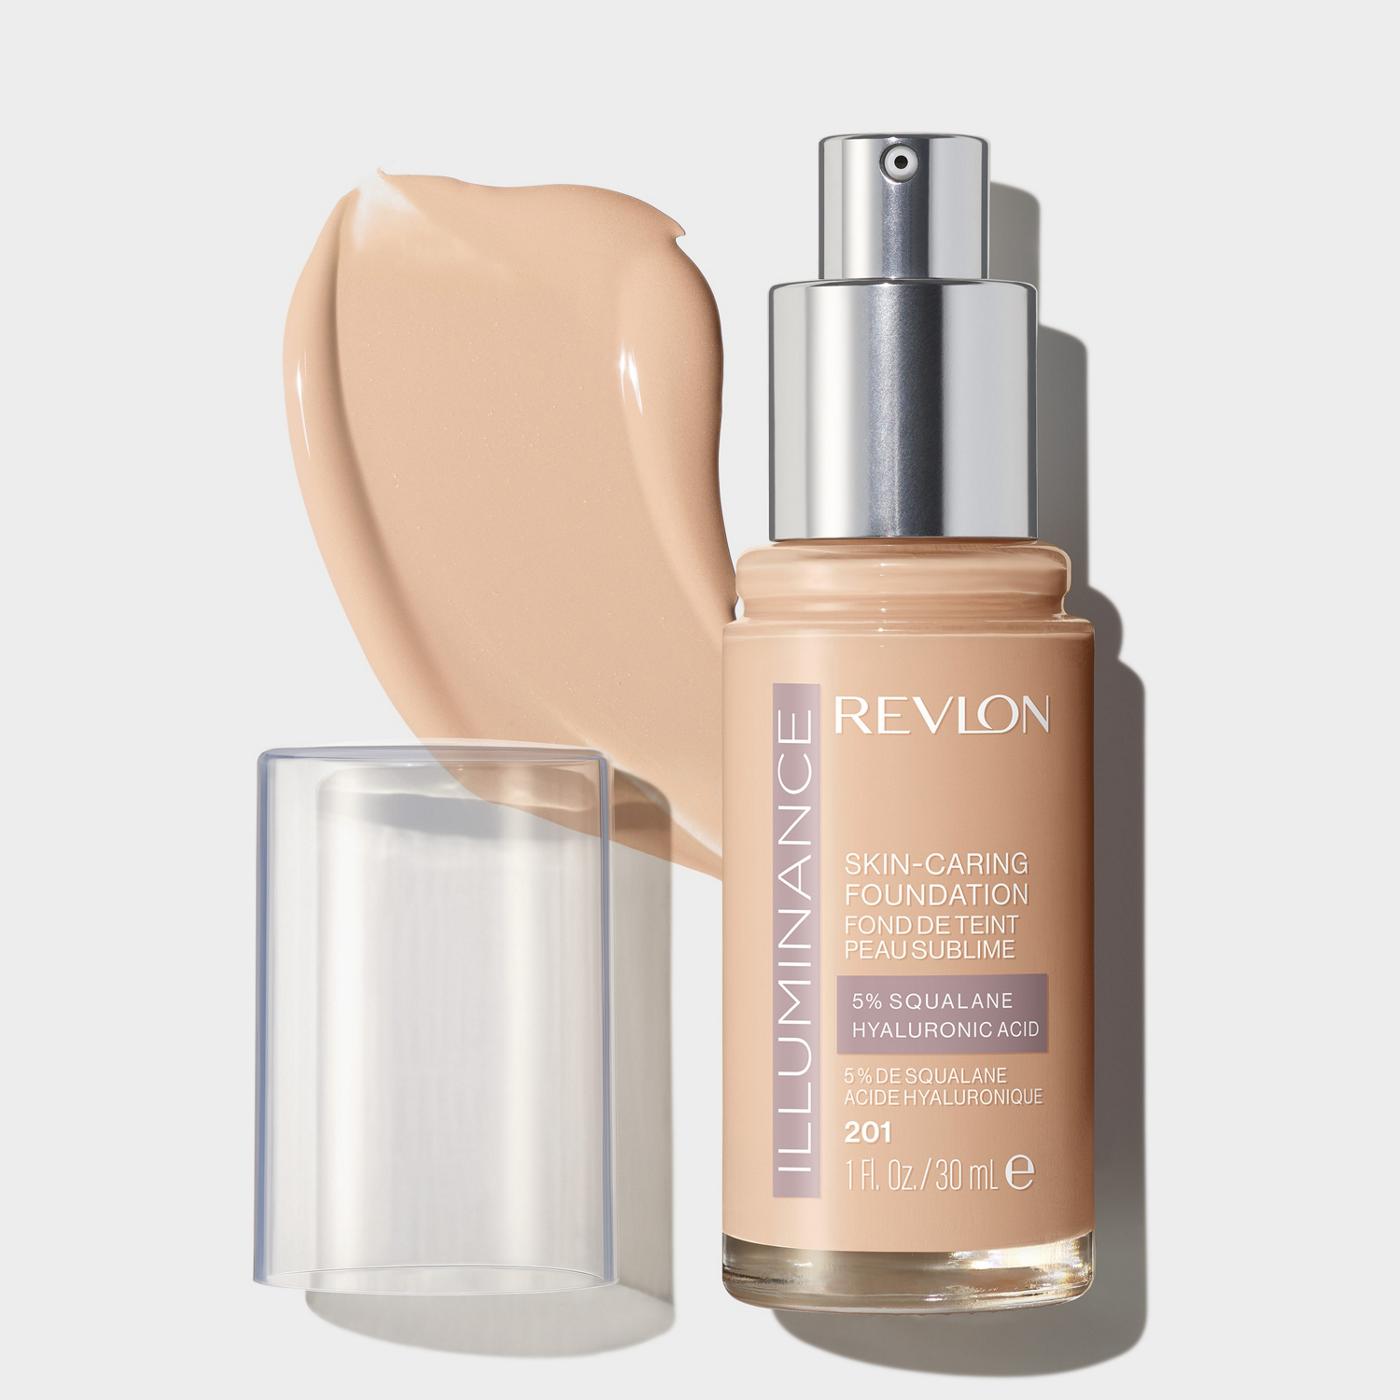 Revlon Illuminance Skin-Caring Foundation - Creamy Natural; image 2 of 3